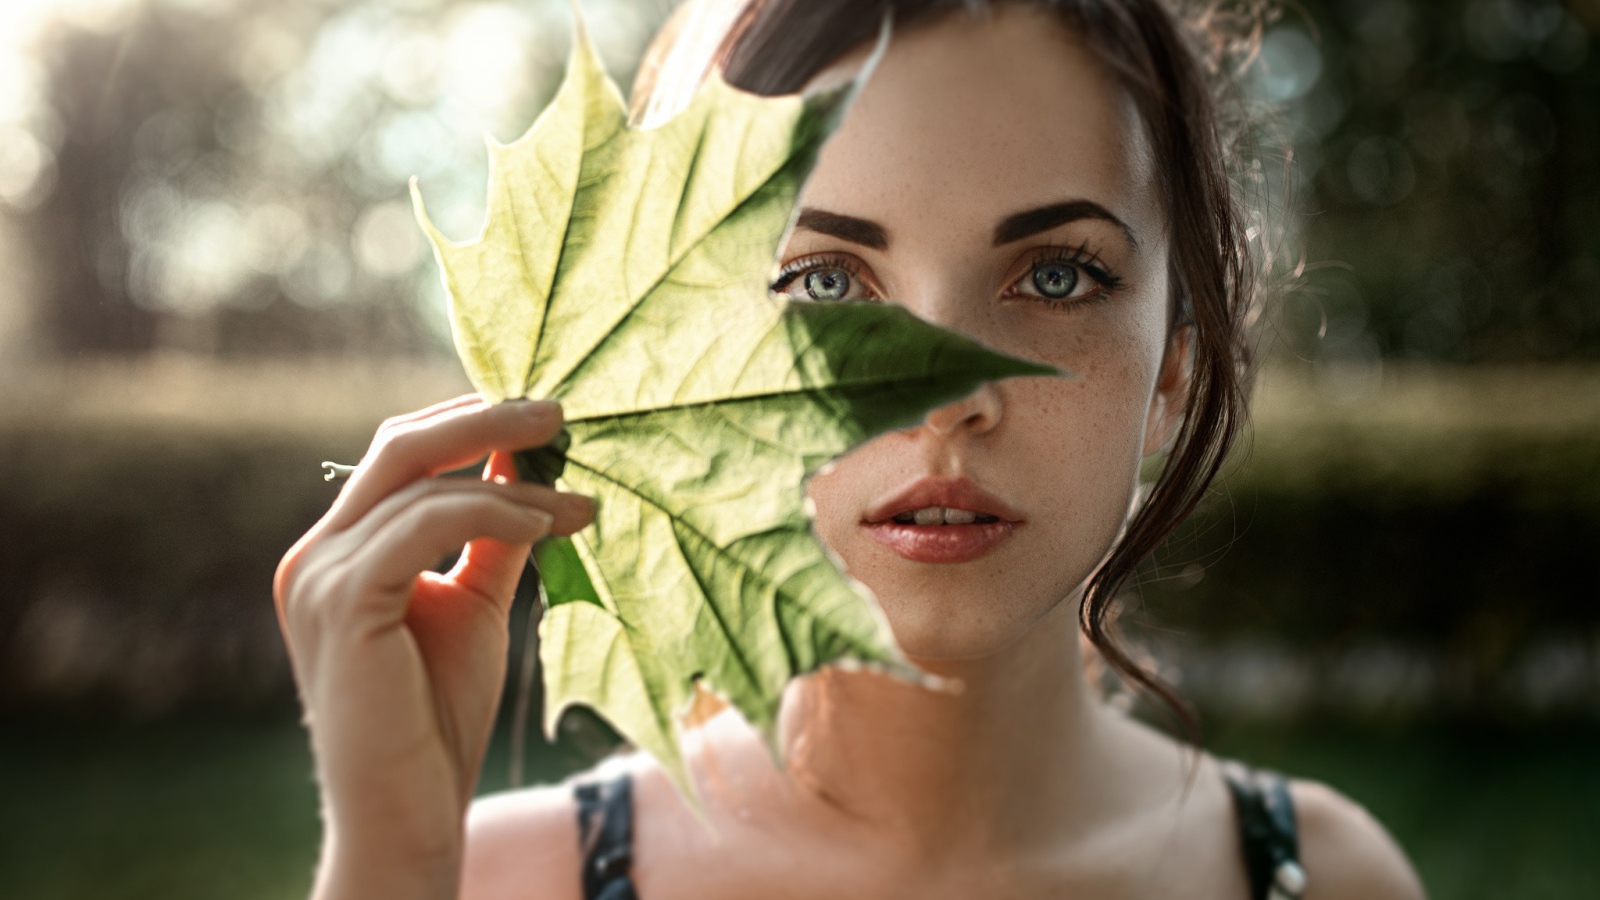 Девушка закрывает лицо листом, фото Георгий Чернядьев